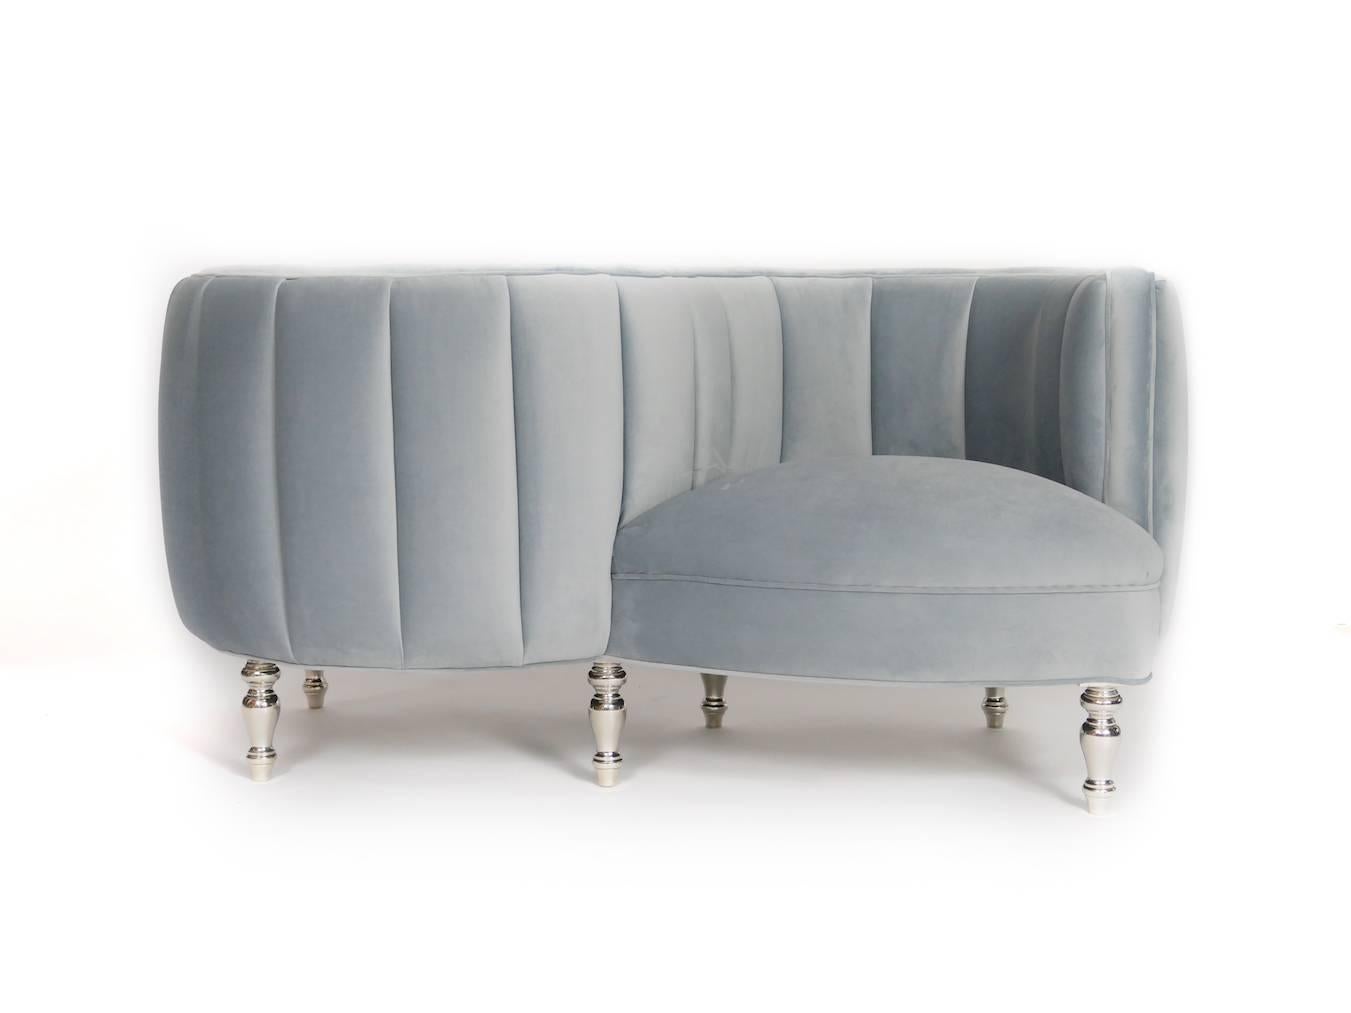 Dieser klassische Sessel oder Tête-à-tête im Stil von Napoleon III wurde neu gestaltet. Es ist die
perfektes Gesprächsthema. Wir haben Beine aus weißer Bronze verwendet und ein modernes
die Polsterung zu berühren. Das Sofa ist mit silbernem/grauem